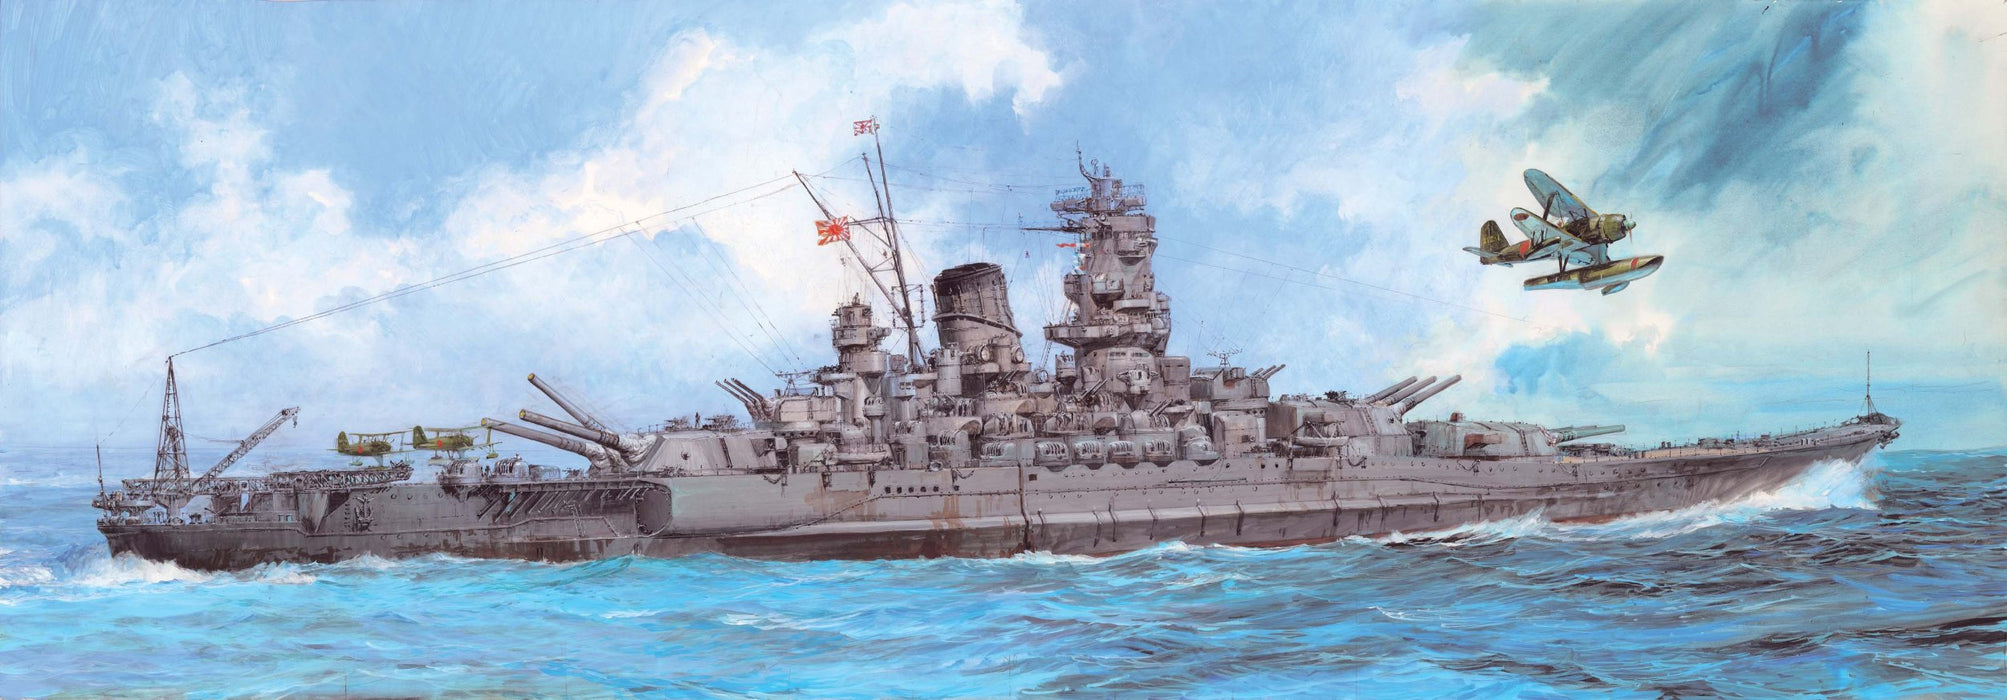 FUJIMI 610009 Ijn Imperial Japanese Navy Battleship Yamato 1945 1/500 Scale Kit